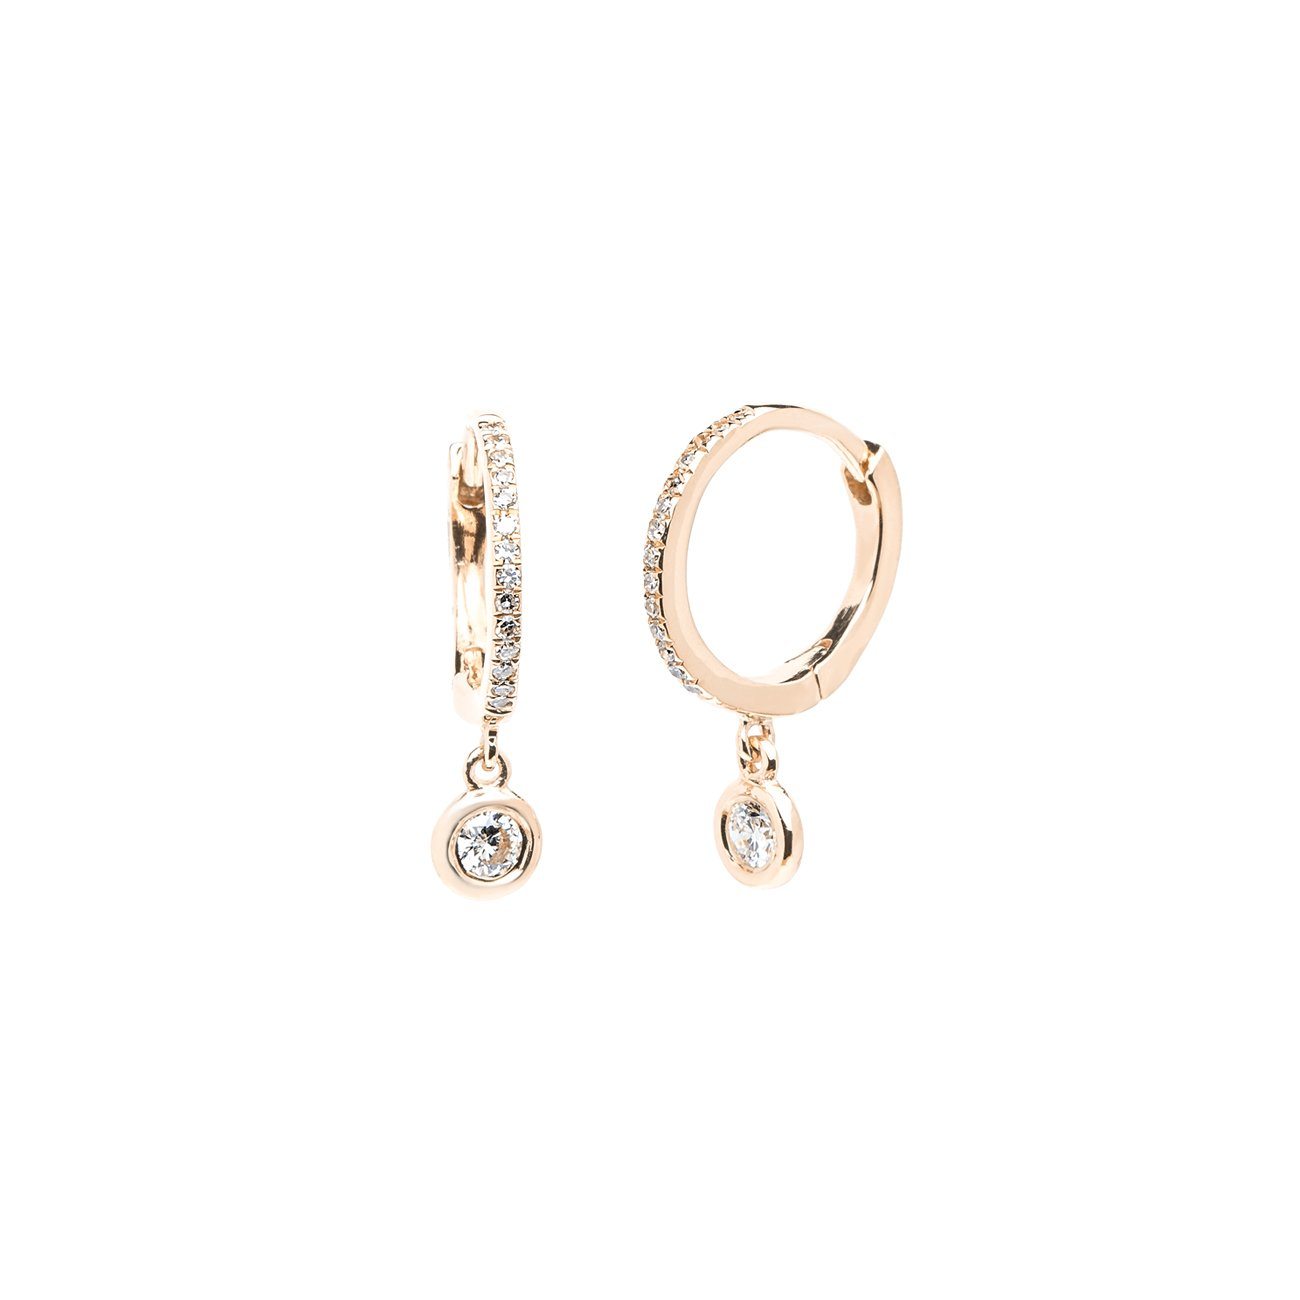 Diamond Drop Earrings Fine Jewelry Earrings Princess Bride Diamonds 14K Rose Gold 